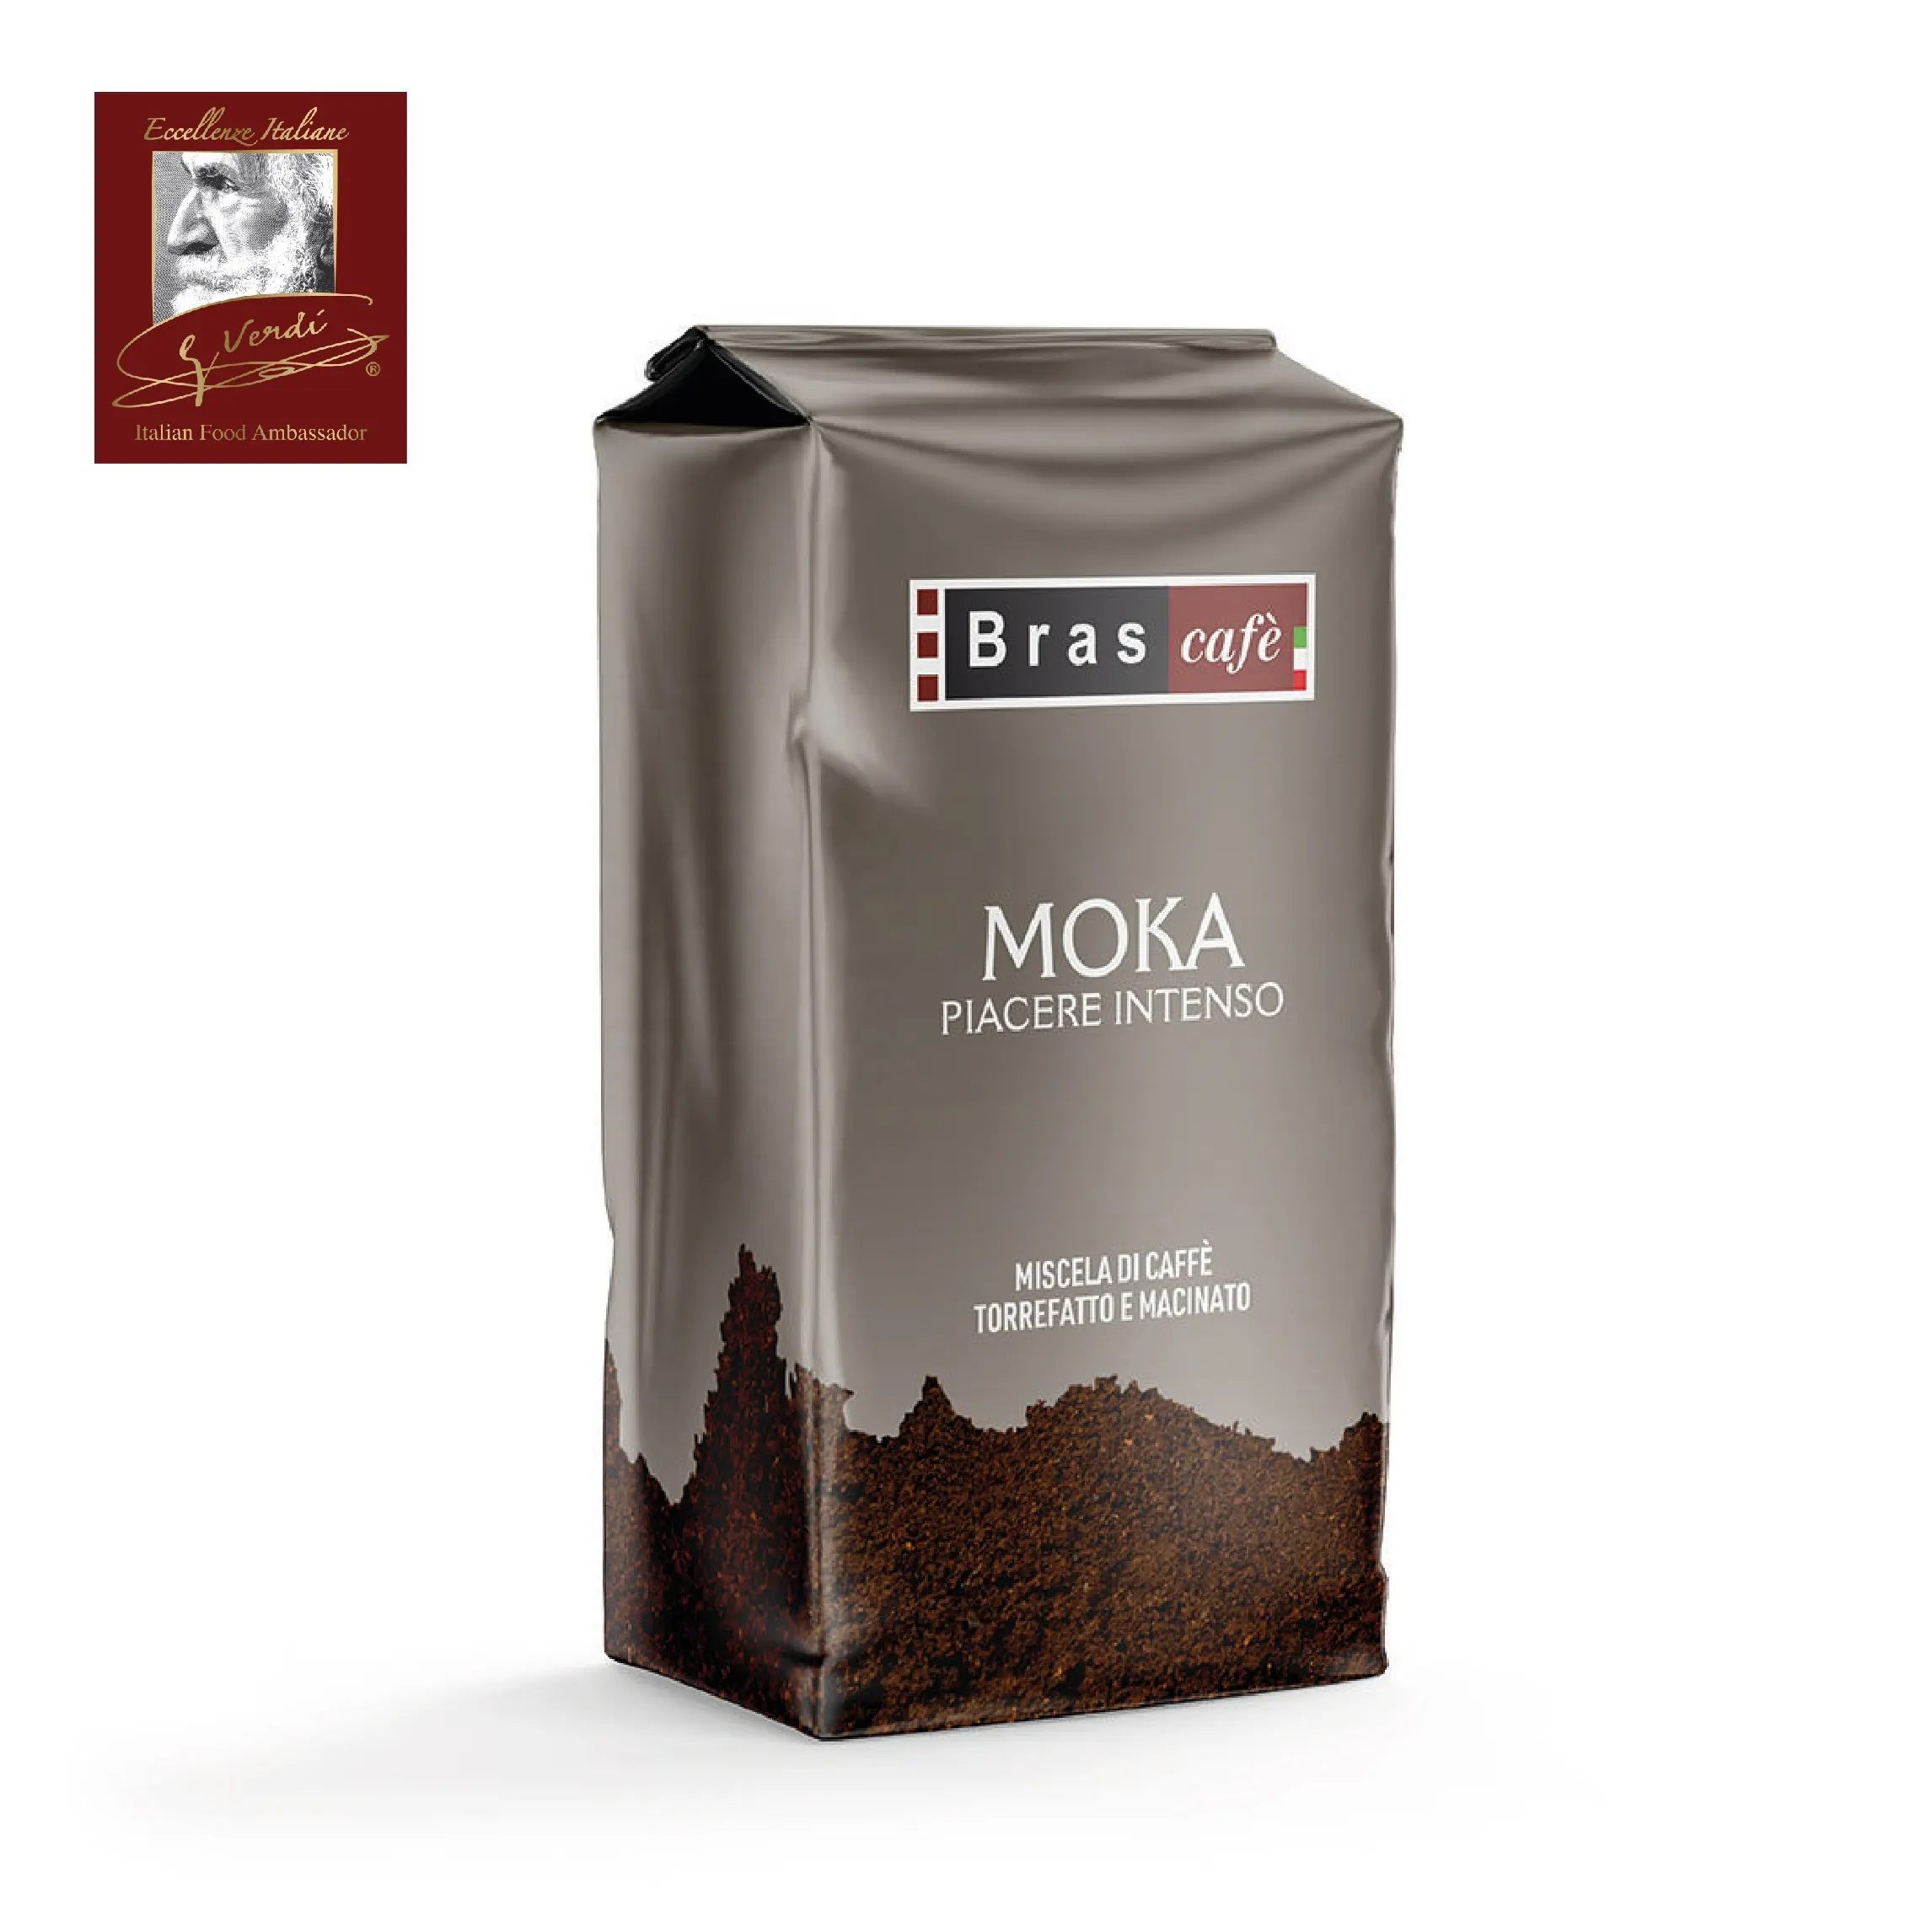 القهوة المطحونة موكا 250 جرام حقيبة جوسيبي فيردي اختيار القهوة